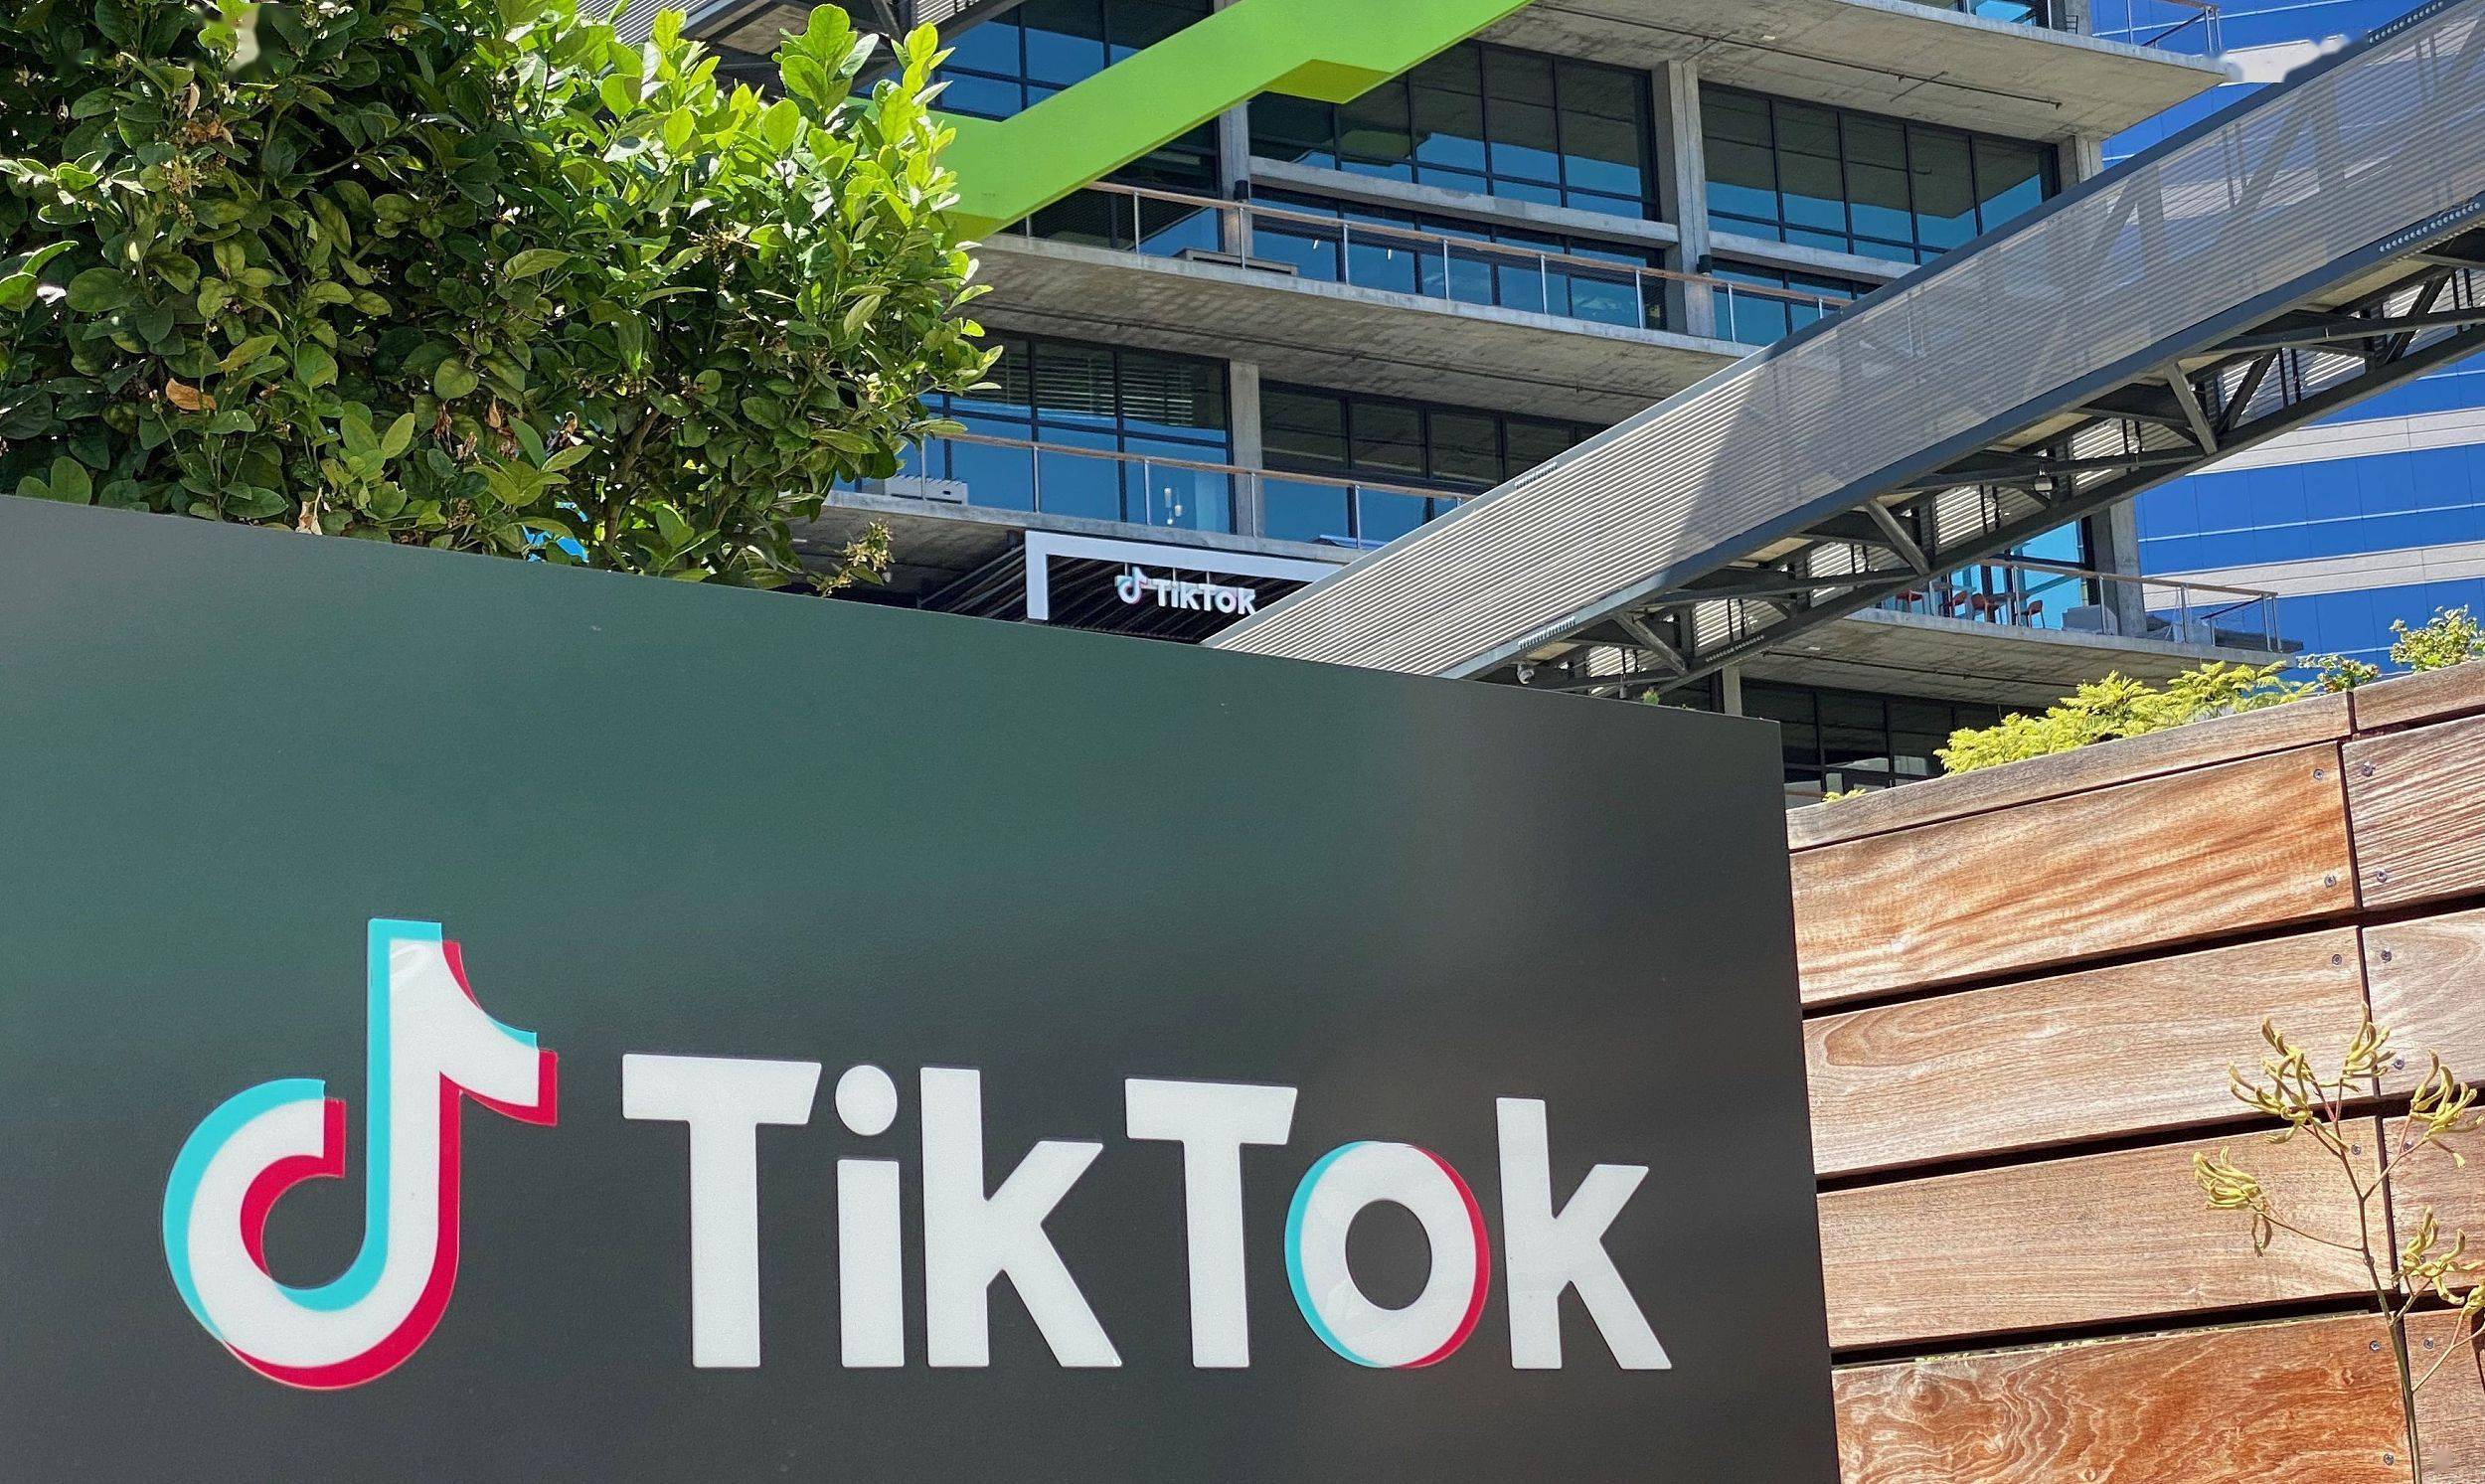 在美国各大科技公司纷纷裁员之际，TikTok 仍在招聘员工。该公司表示，正在开展为期三年的招聘计划，将在全球各地增加约 3000 名工程师，并扩充美国加州山景城的办事处规模。